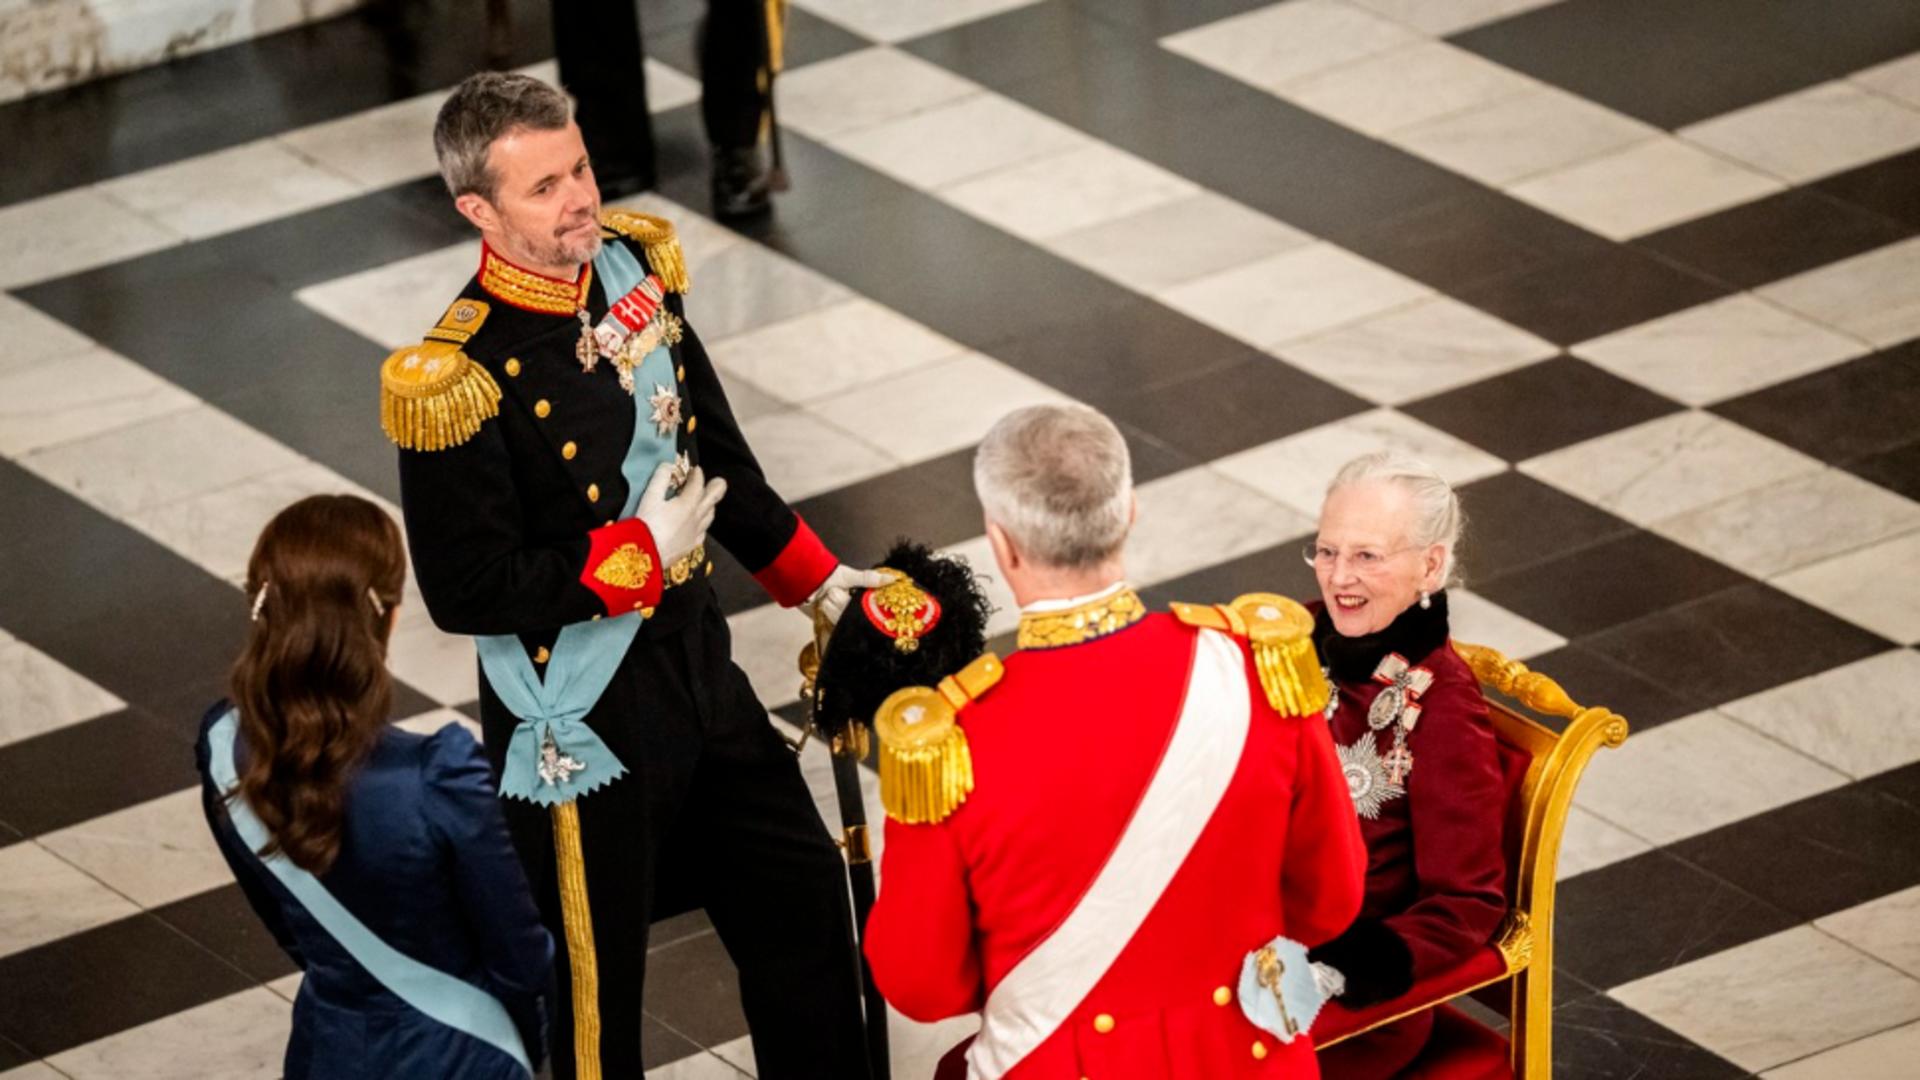 Spectacol REGAL în Danemarca. Reginei Margrethe a II-a abdică în favoarea fiului său Frederik